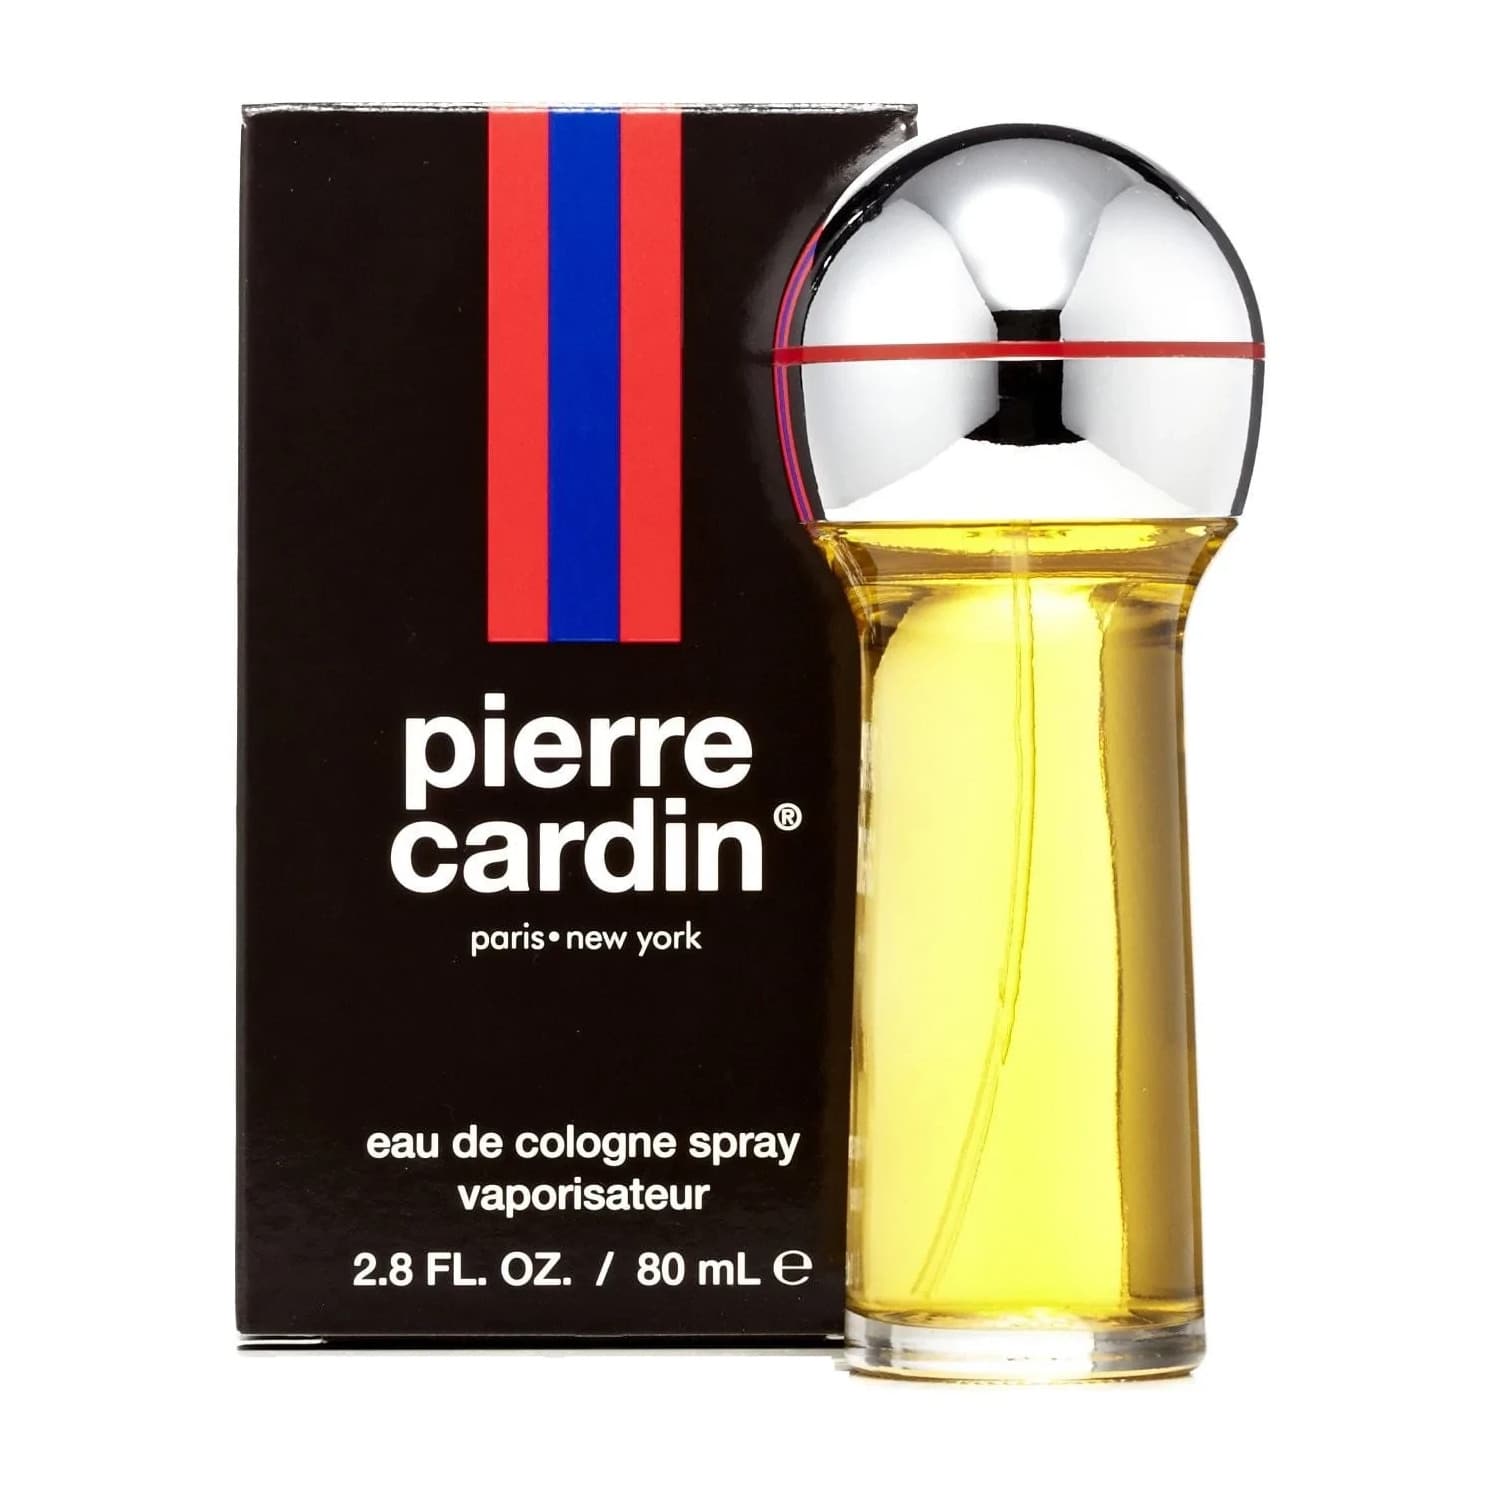 Pierre Cardin by Pierre Cardin 2.8 oz EDC Spray for Men